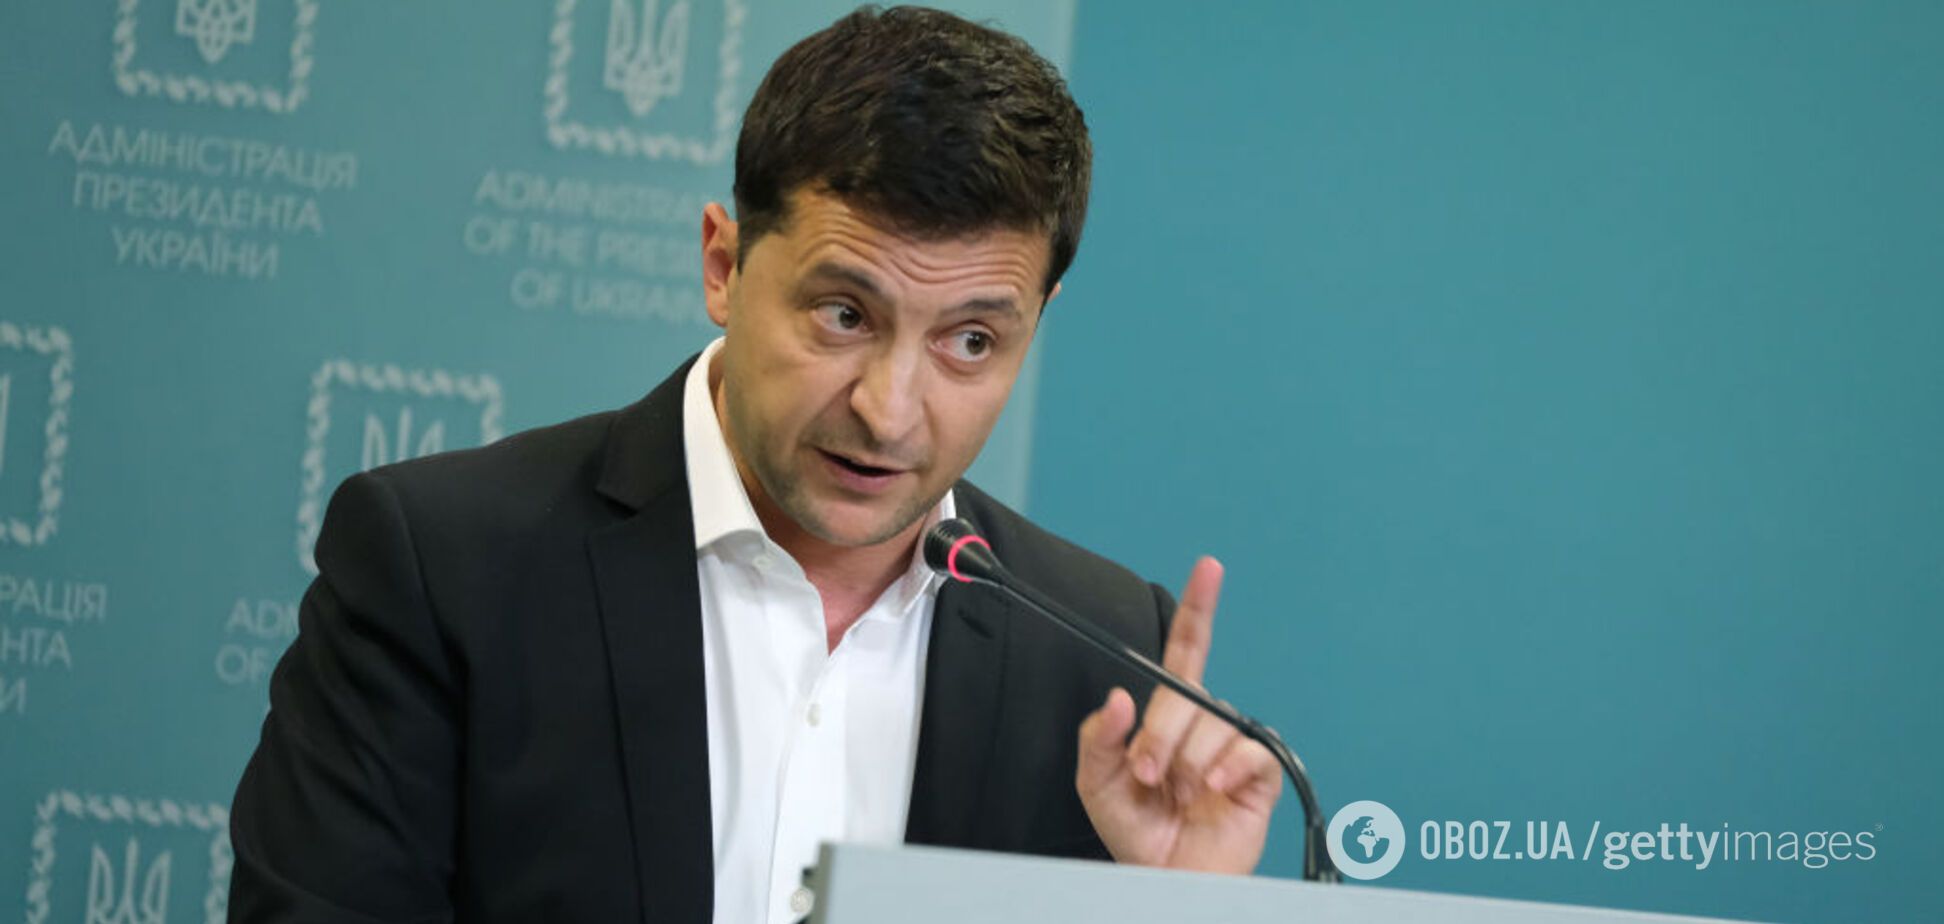 Южанина обвинила Зеленского в некомпетентности назначения министров